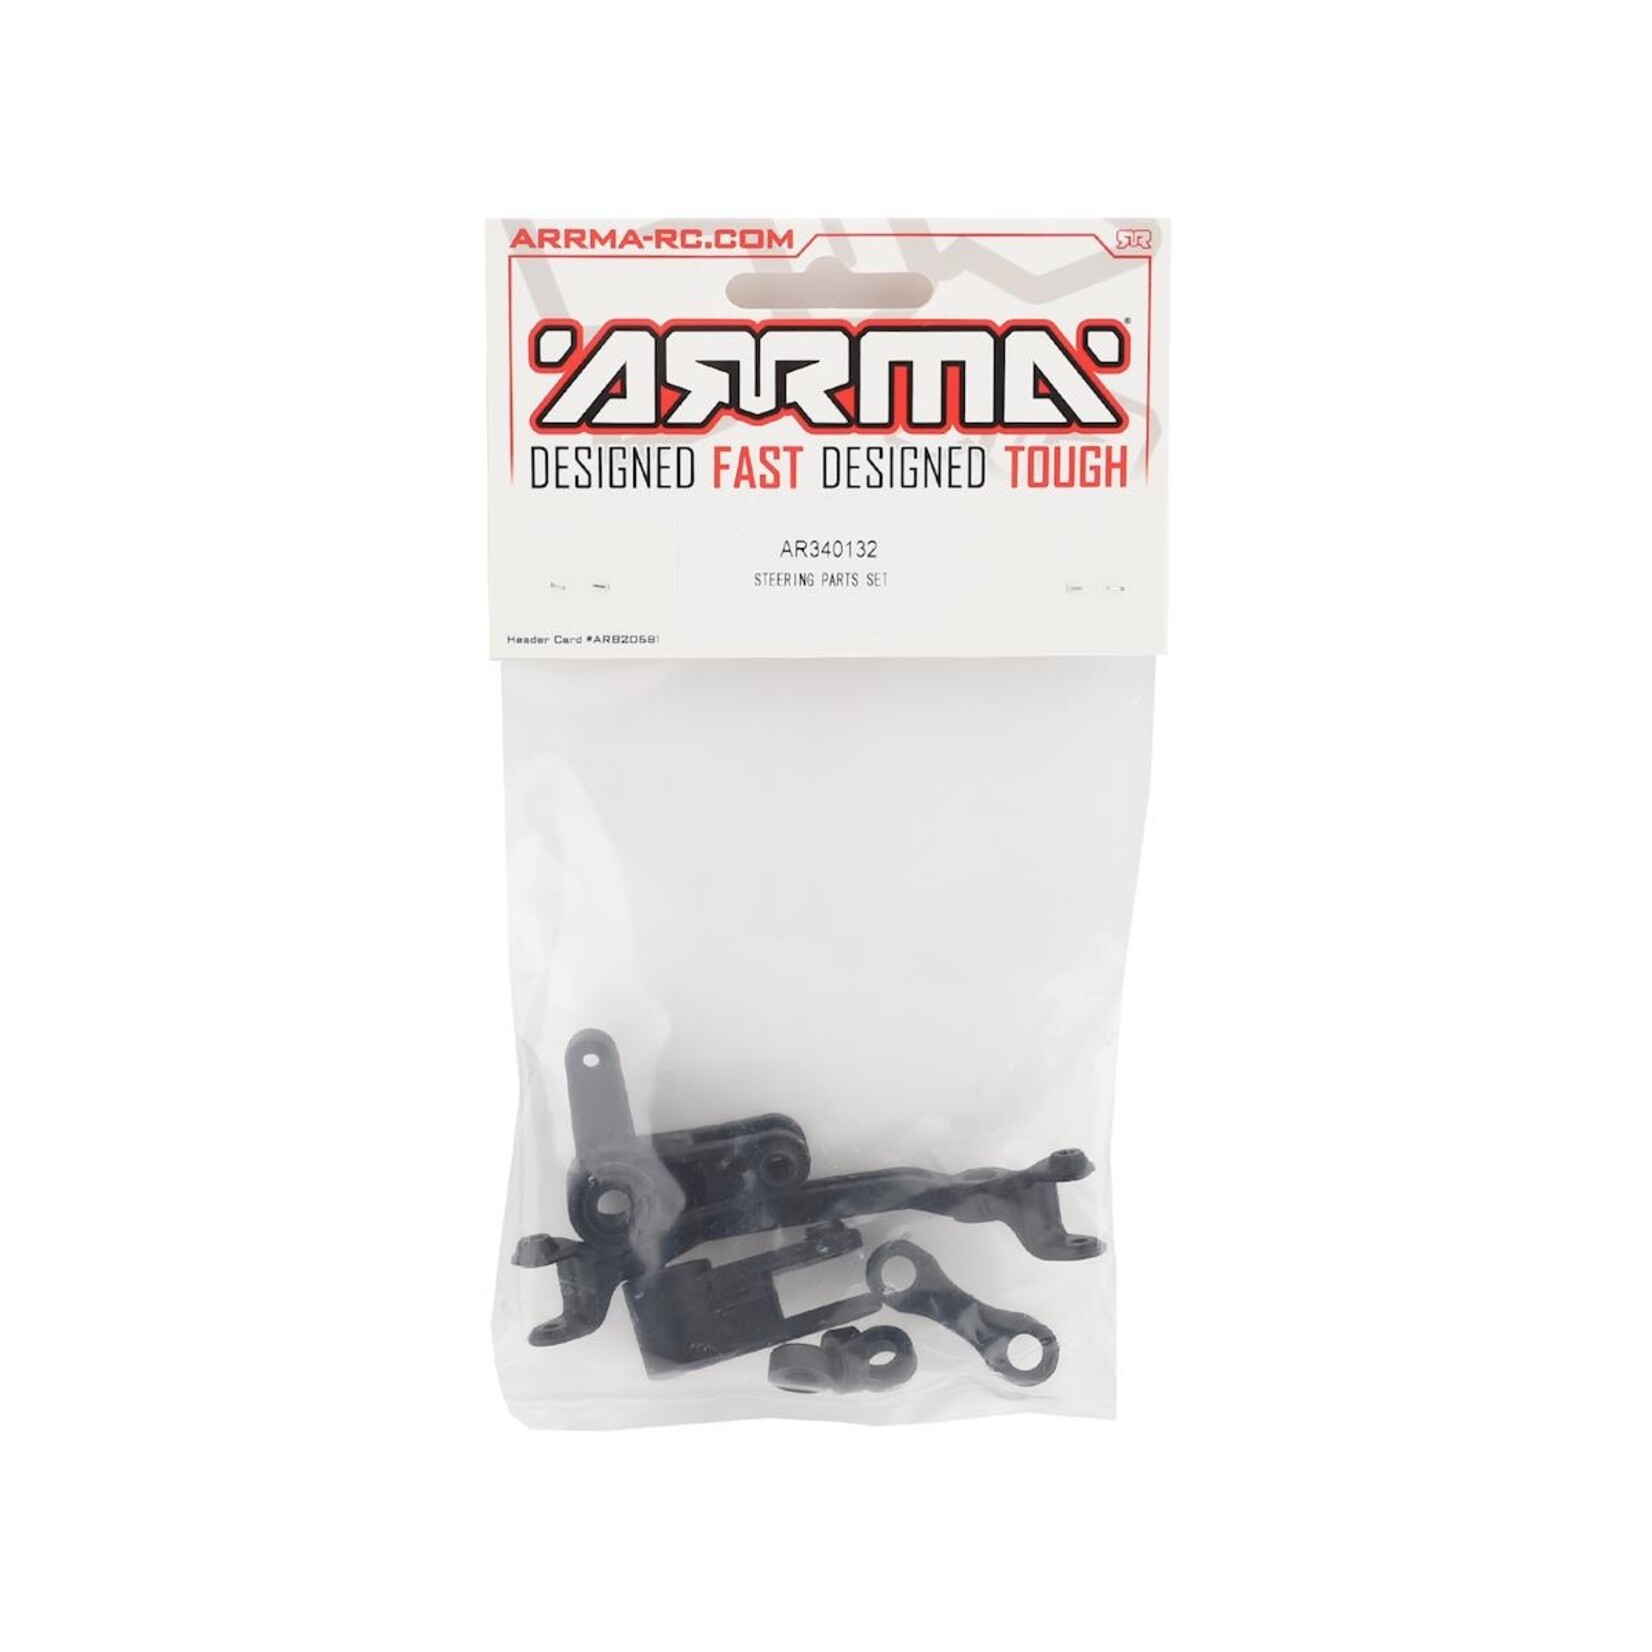 ARRMA Arrma 4x4 Steering Parts Set #AR340132